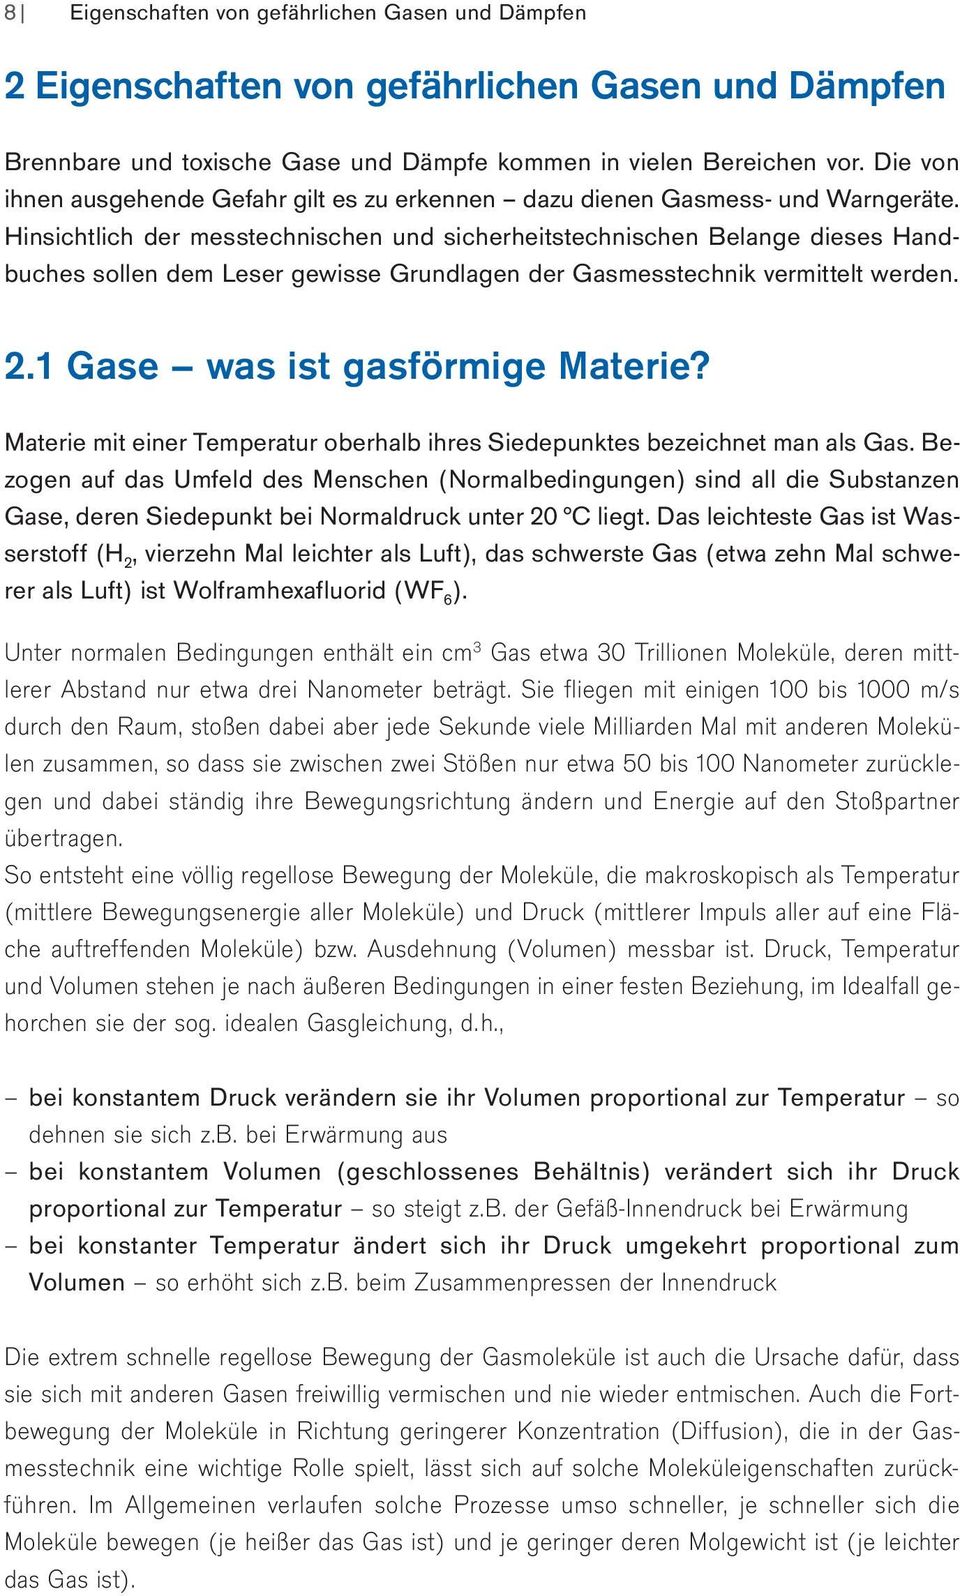 Hinsichtlich der messtechnischen und sicherheitstechni schen Belange dieses Handbuches sollen dem Leser gewisse Grundlagen der Gasmesstechnik vermittelt werden. 2.1 Gase was ist gasförmige Materie?